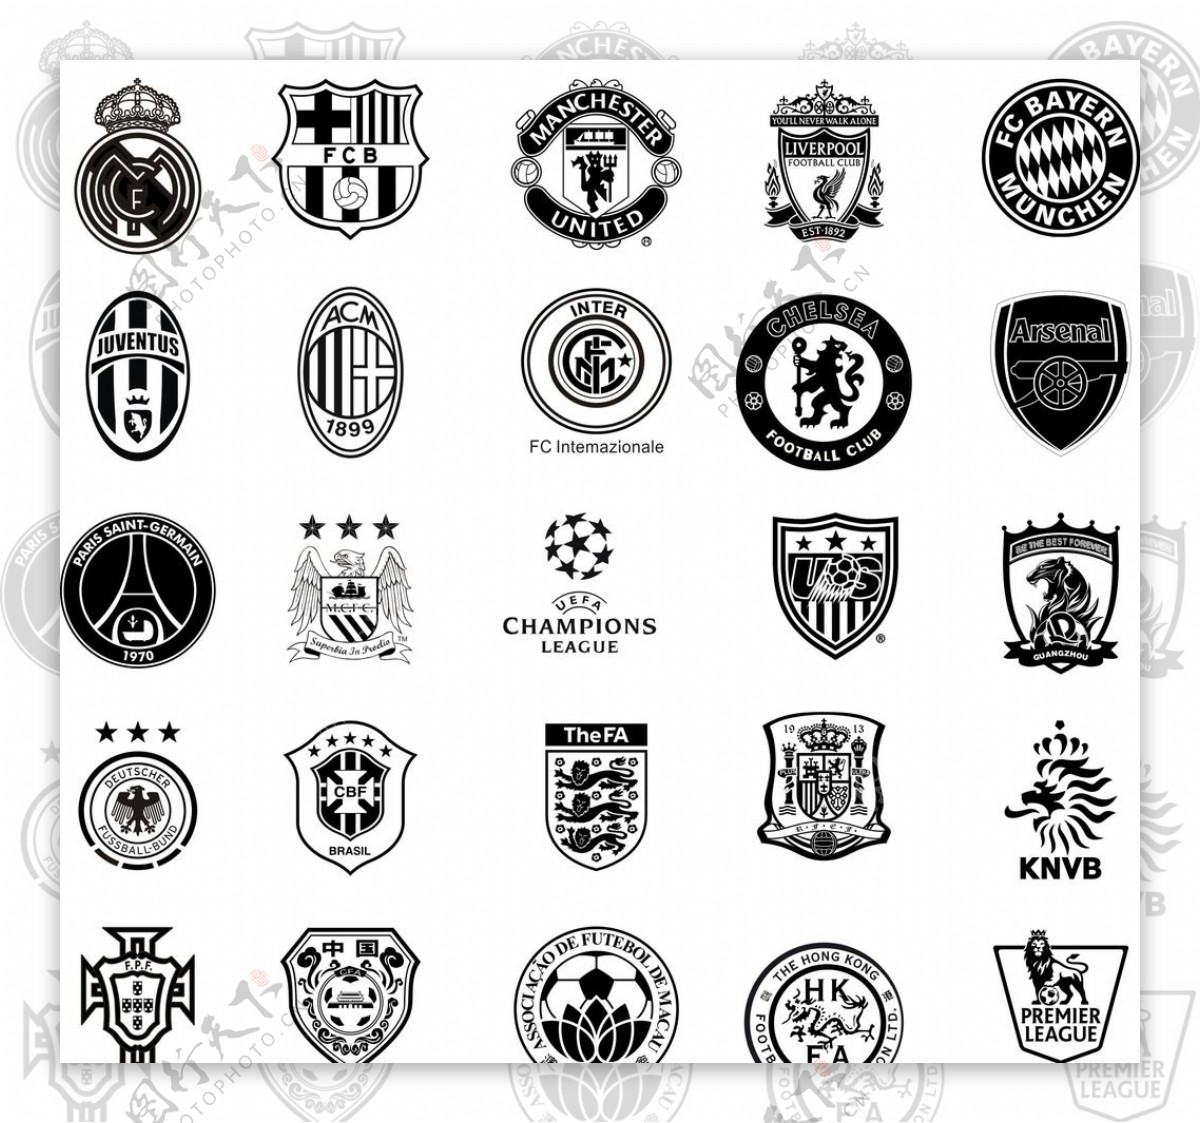 足球队徽标志